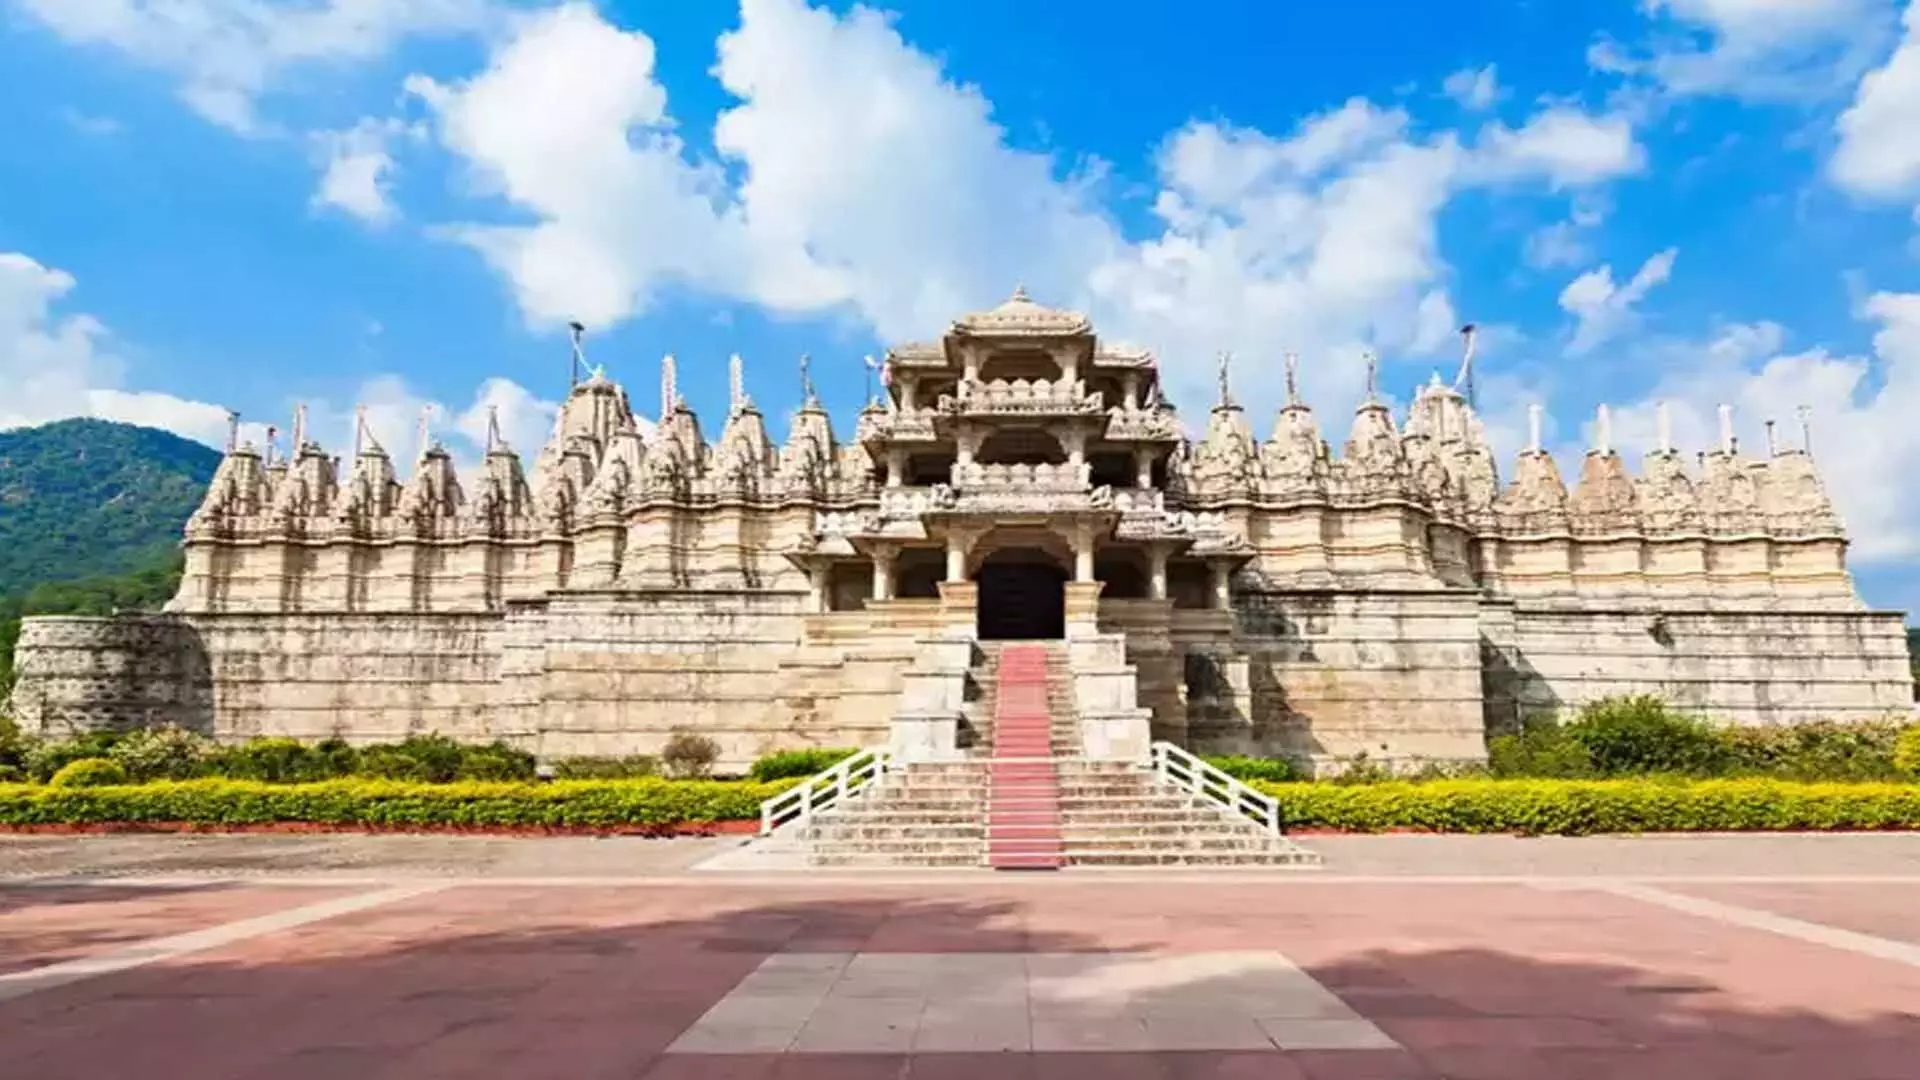 Jain religious places: जैन धार्मिक स्थल के लिए जाना जाता है राजस्थान का रणकपुर प्रमुख दर्शनीय जगहें